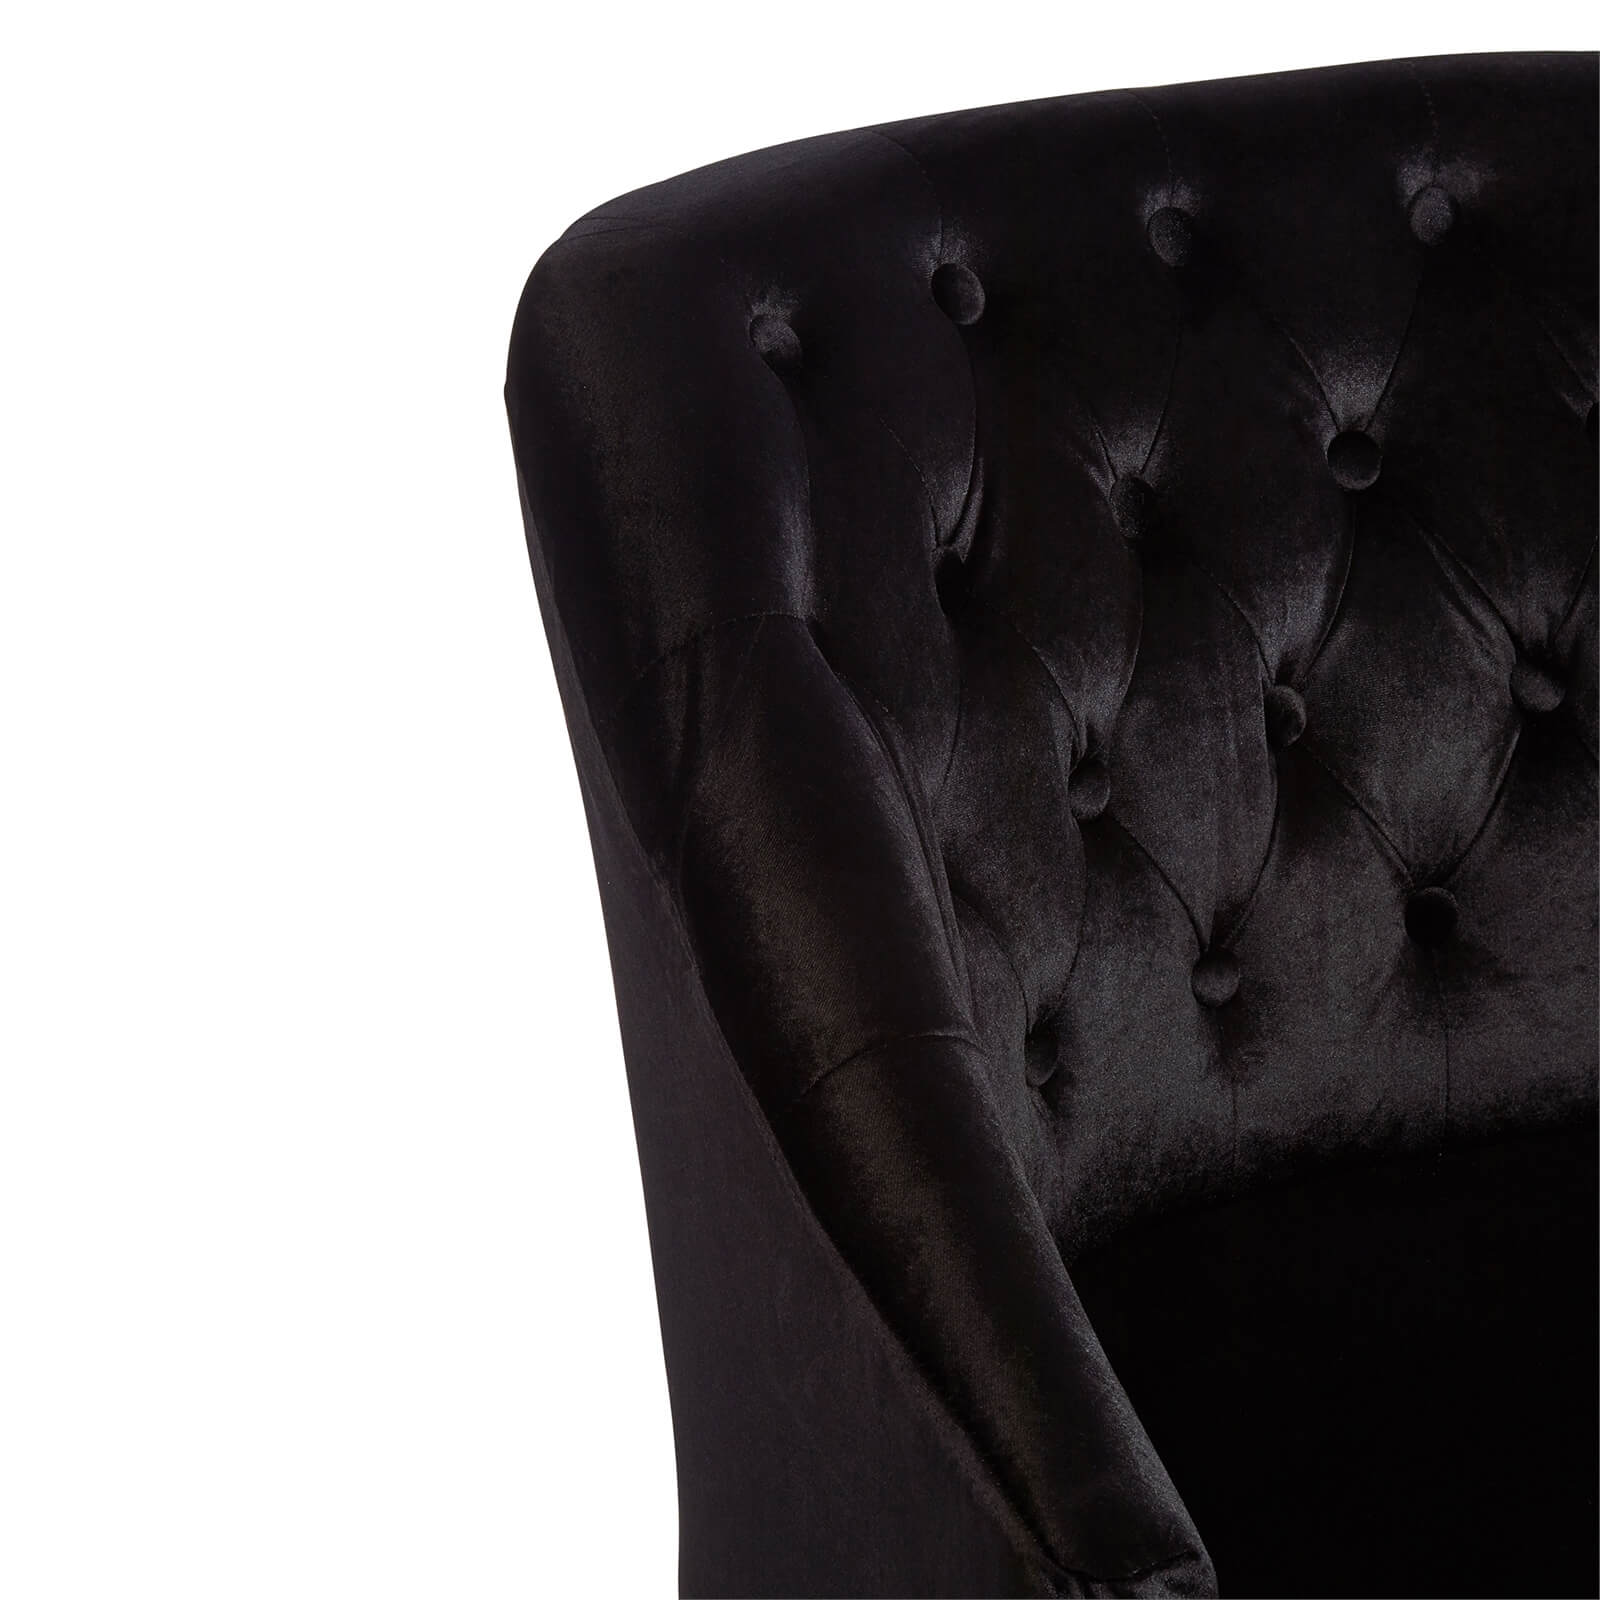 Darwin Velvet Chair - Black